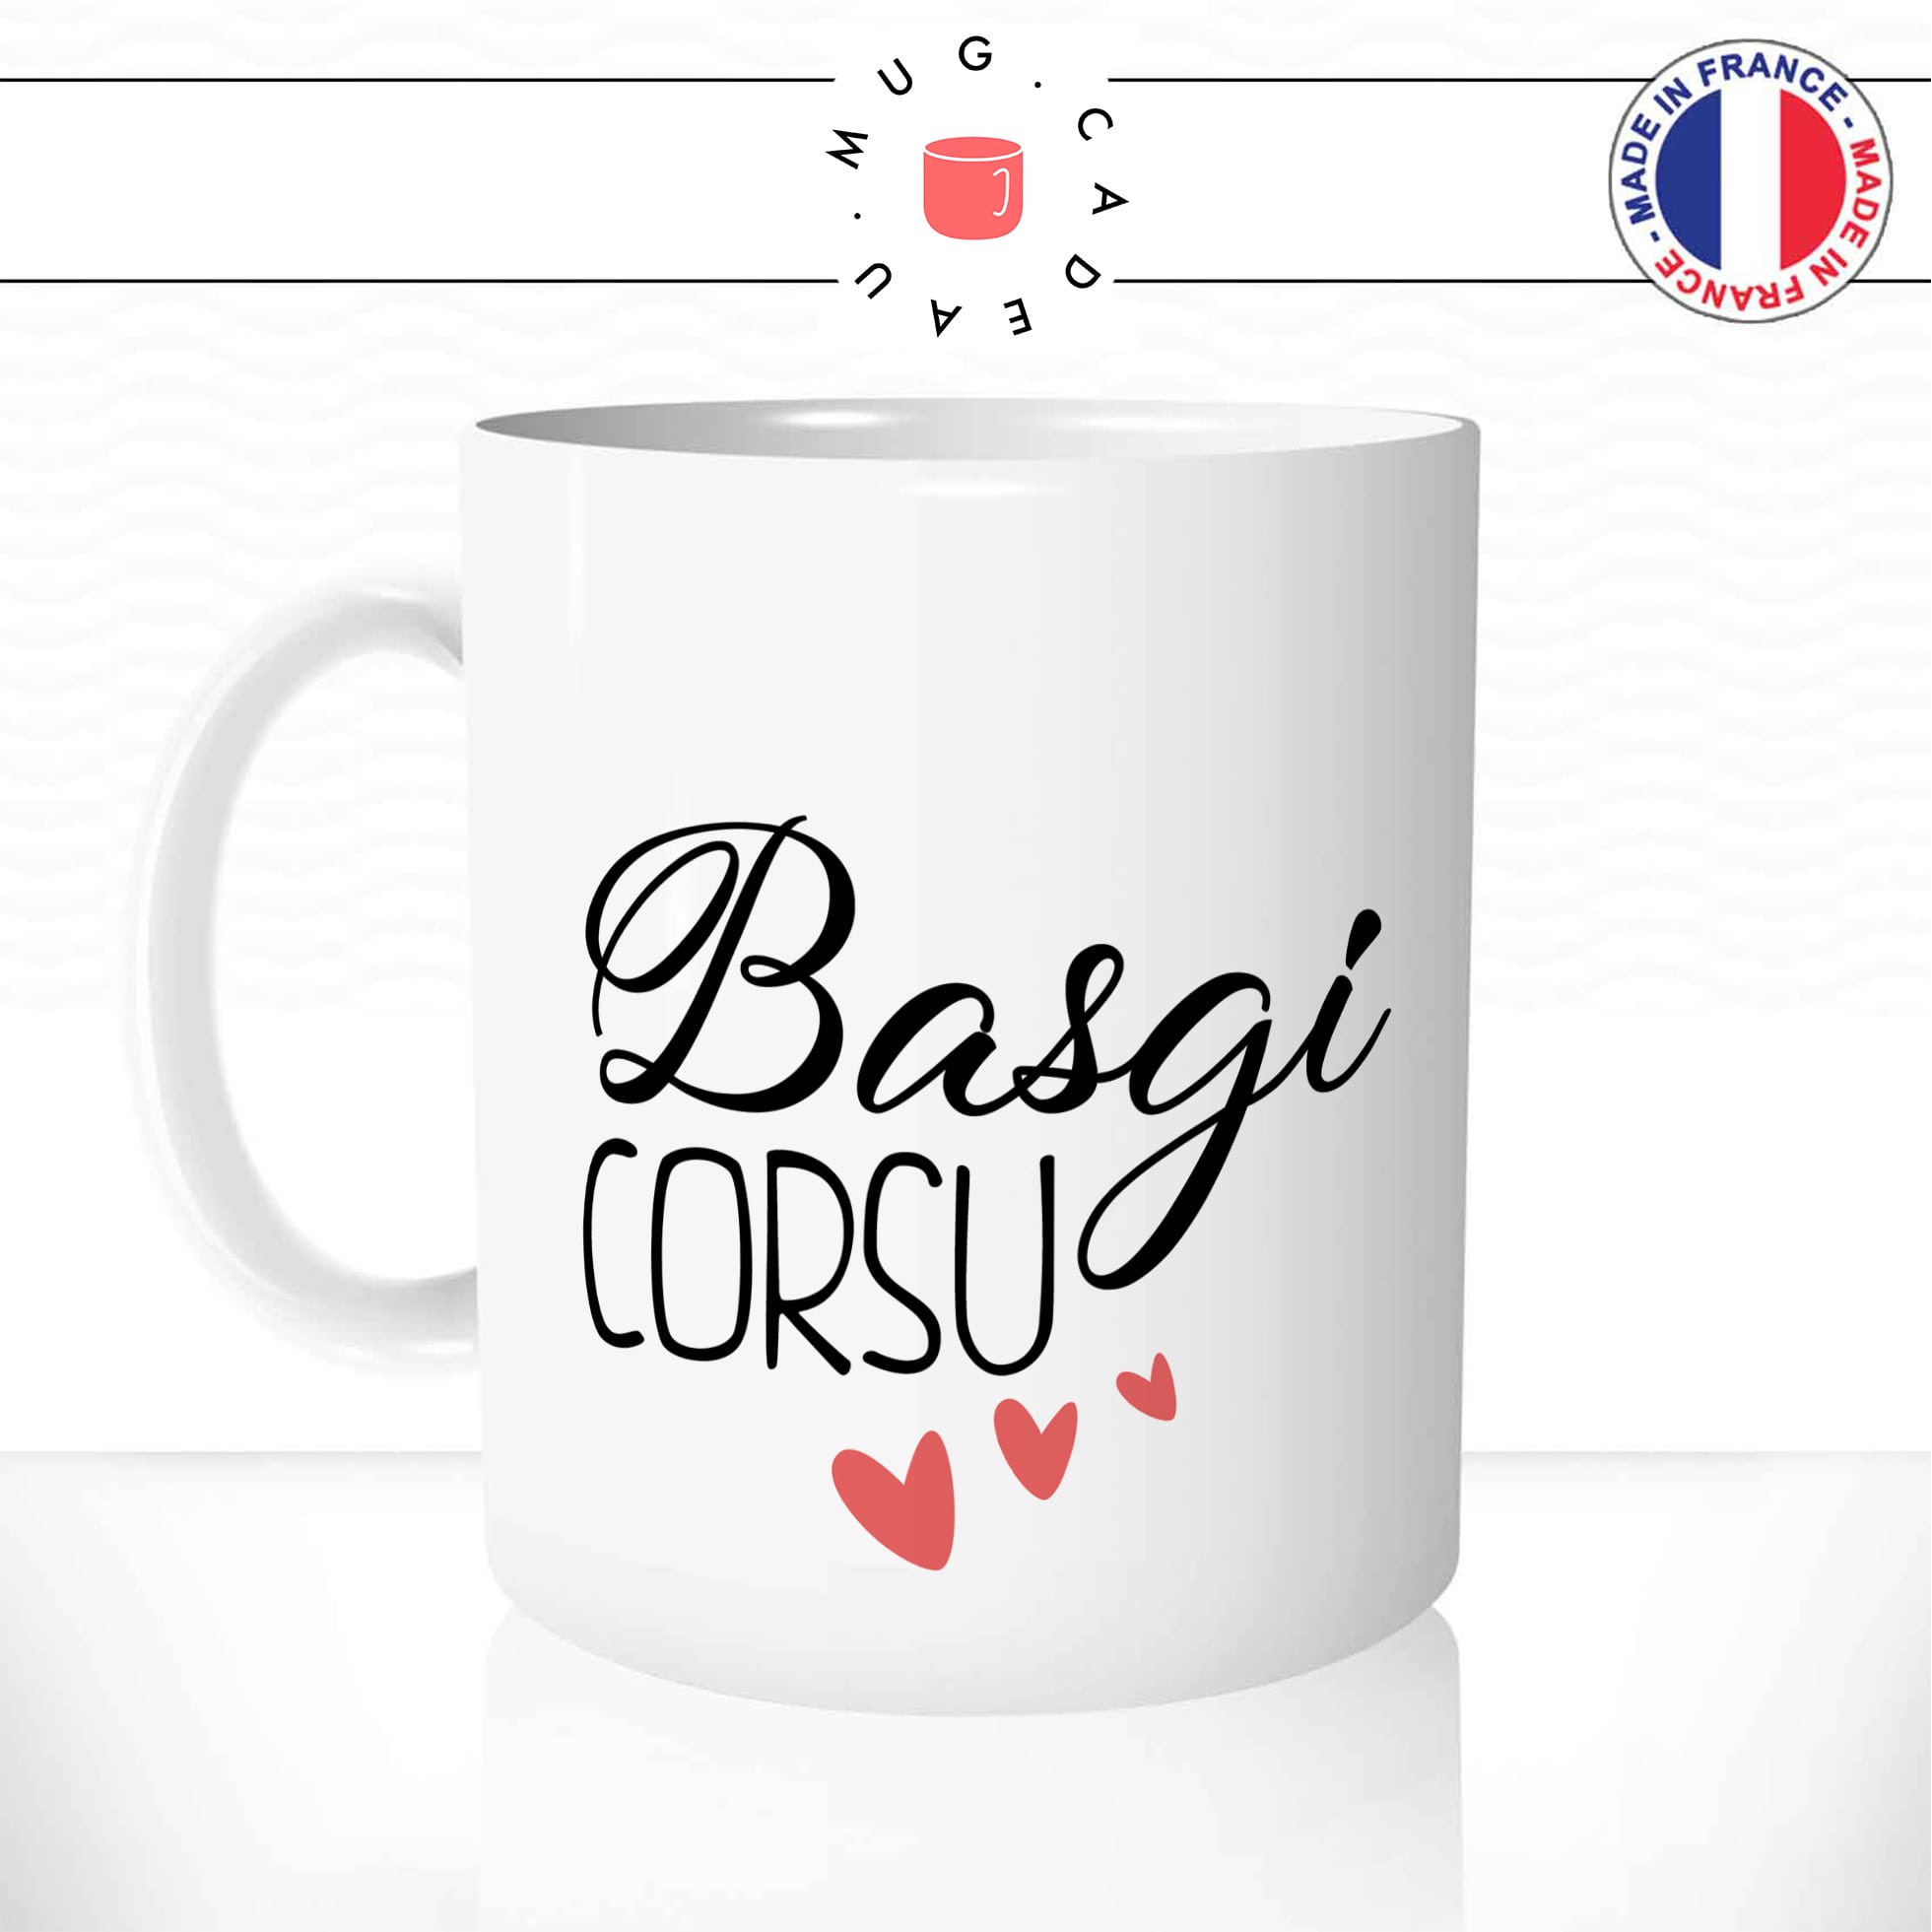 mug-tasse-basgi-corsu-bisou-en-langue-corse-corsica-amour-couple-idée-cadeau-original-fun-café-thé-tasse-personnalisée-min